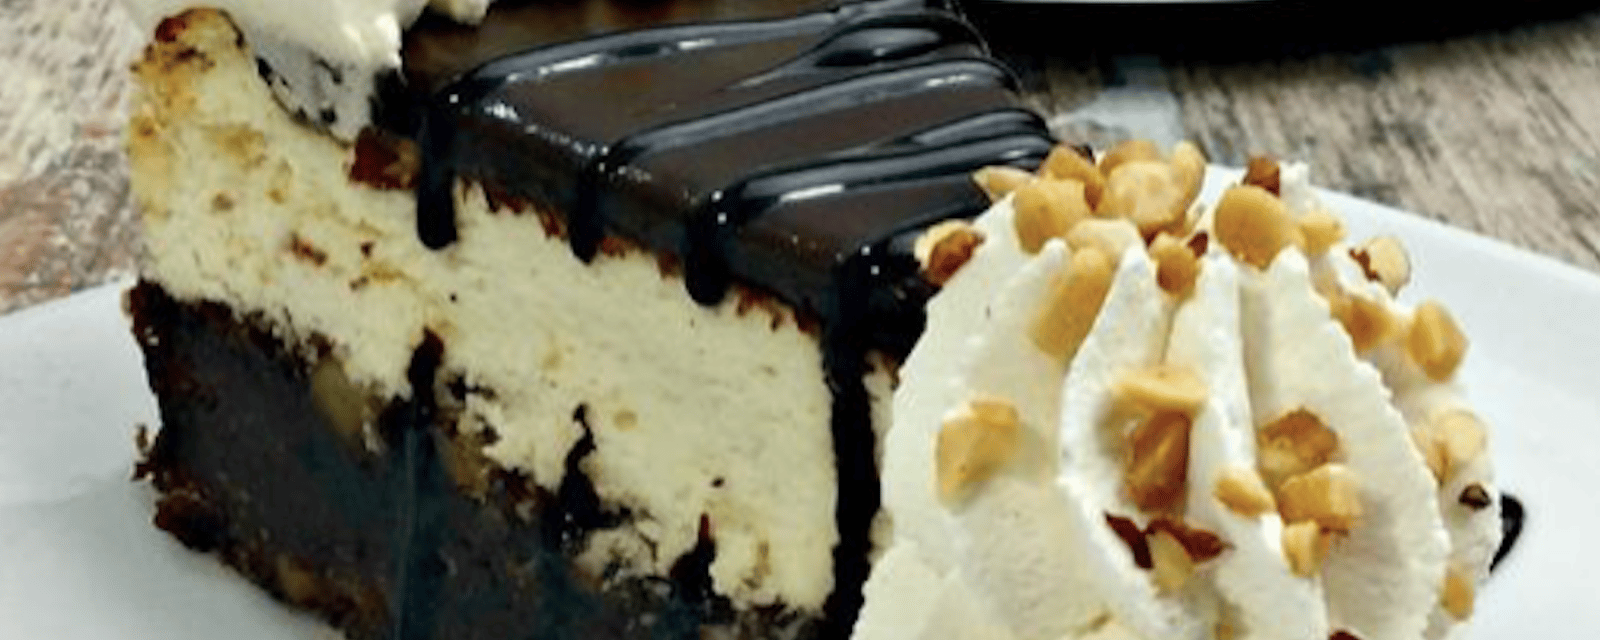 Le dessert le plus gourmand: le gâteau au fromage style sundae au chocolat